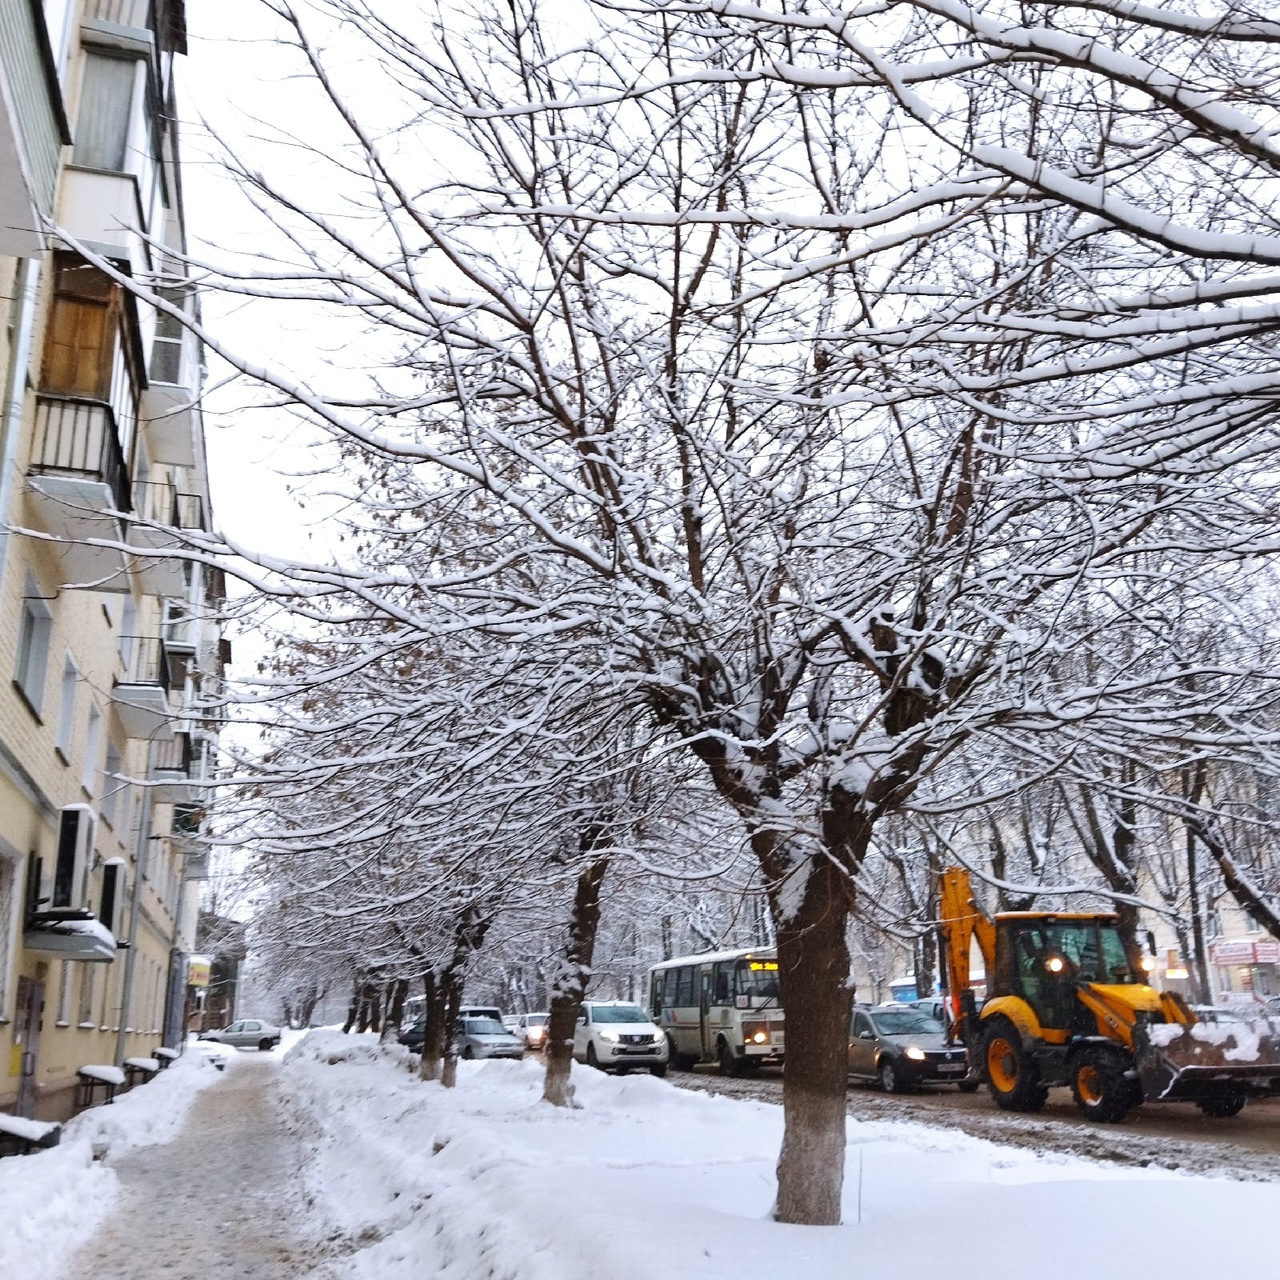 Пасмурно и небольшой снег: погода в Кирове на 29 января